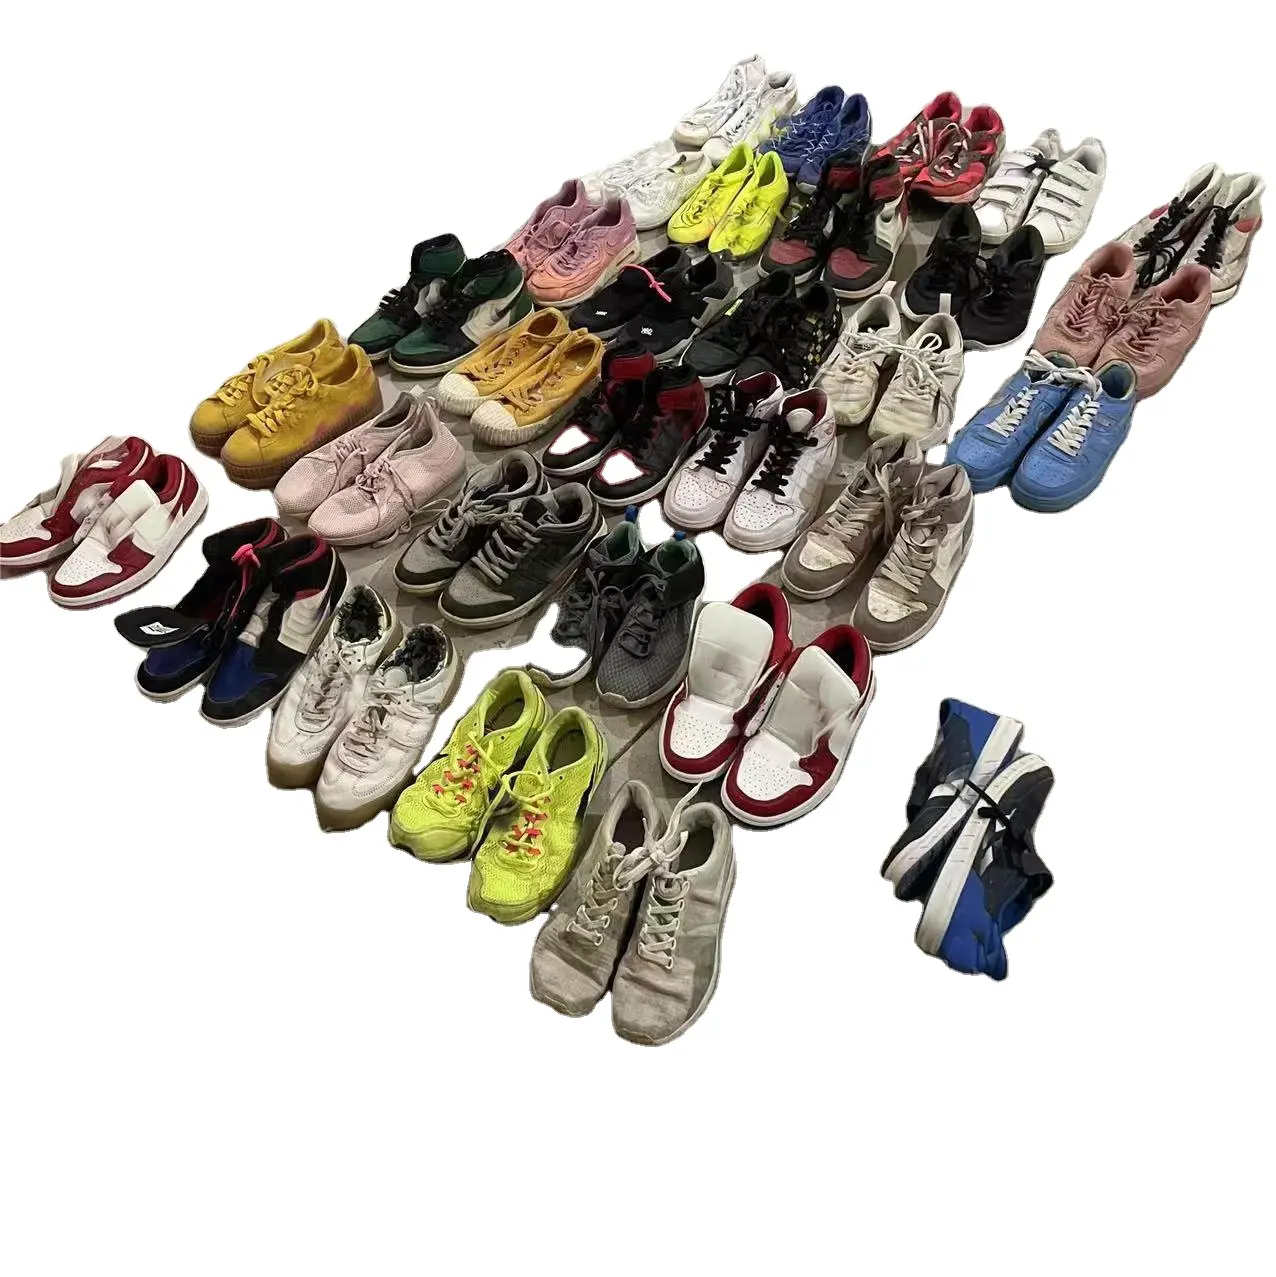 Venta de zapatillas deportivas de marca famosa de segunda mano, calzado deportivo de marca internacional usado para damas